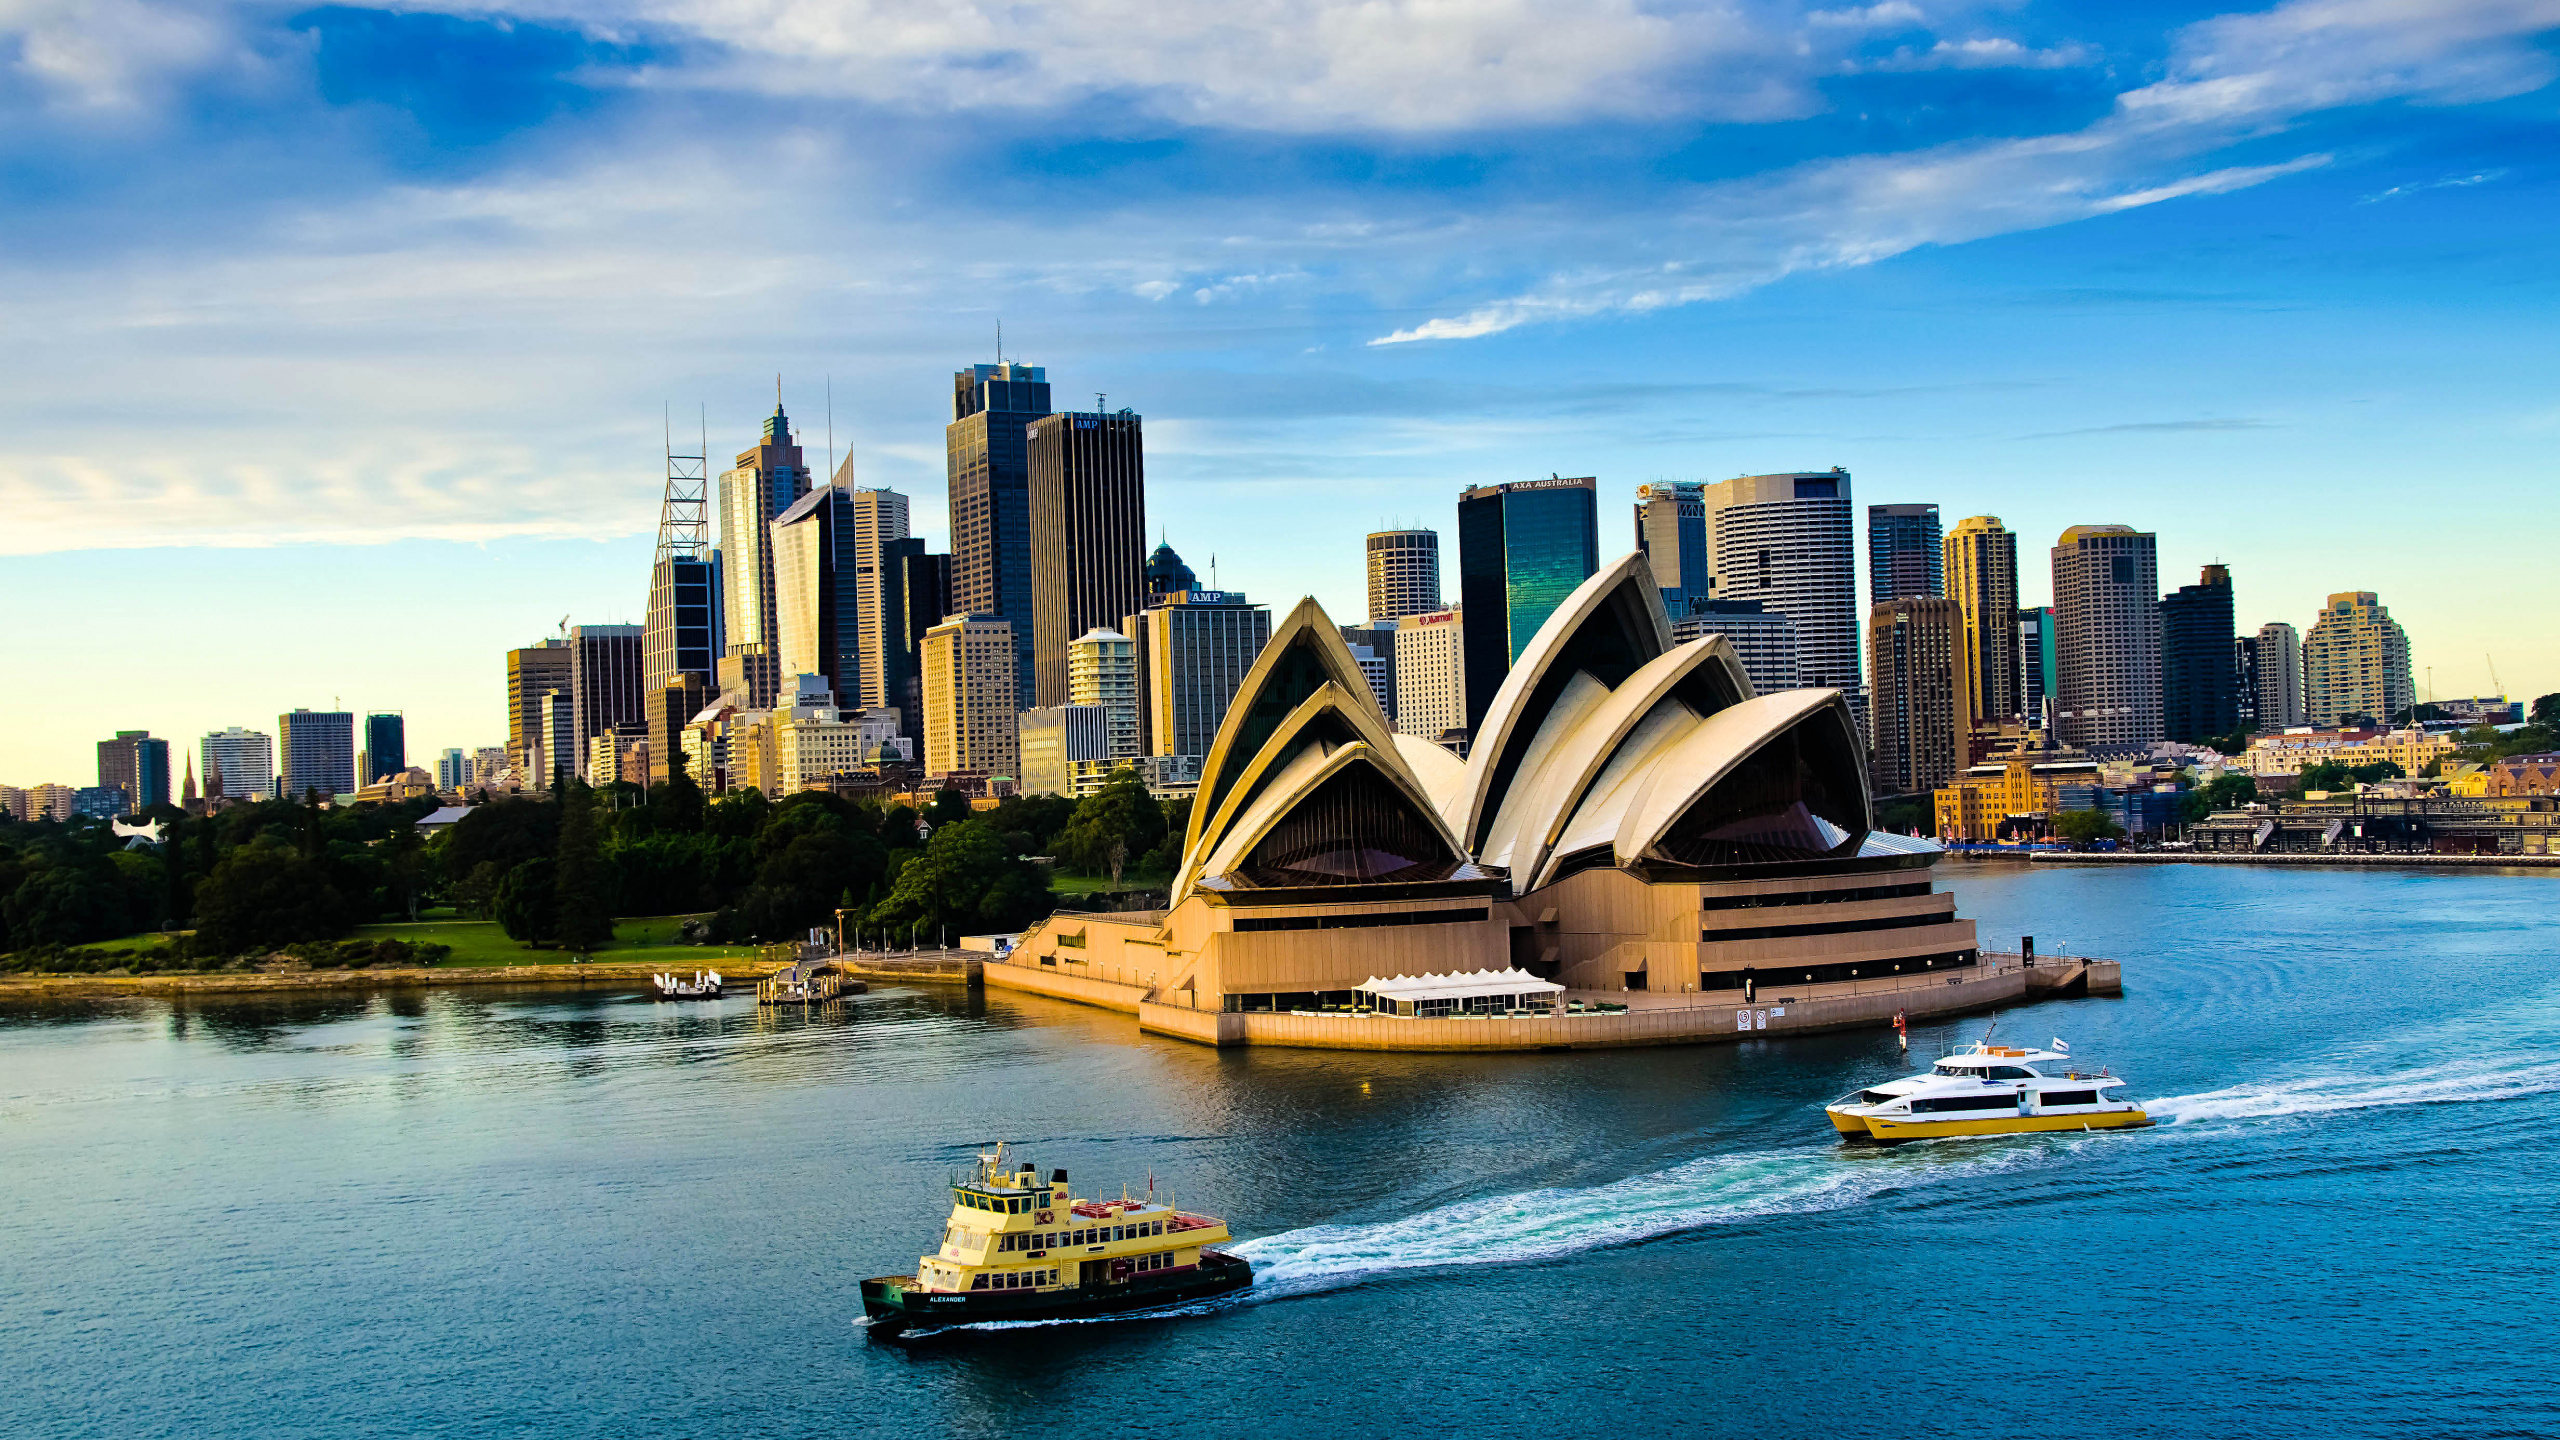 悉尼歌剧院, 歌剧院, 水运, 城市景观, 城市 壁纸 2560x1440 允许